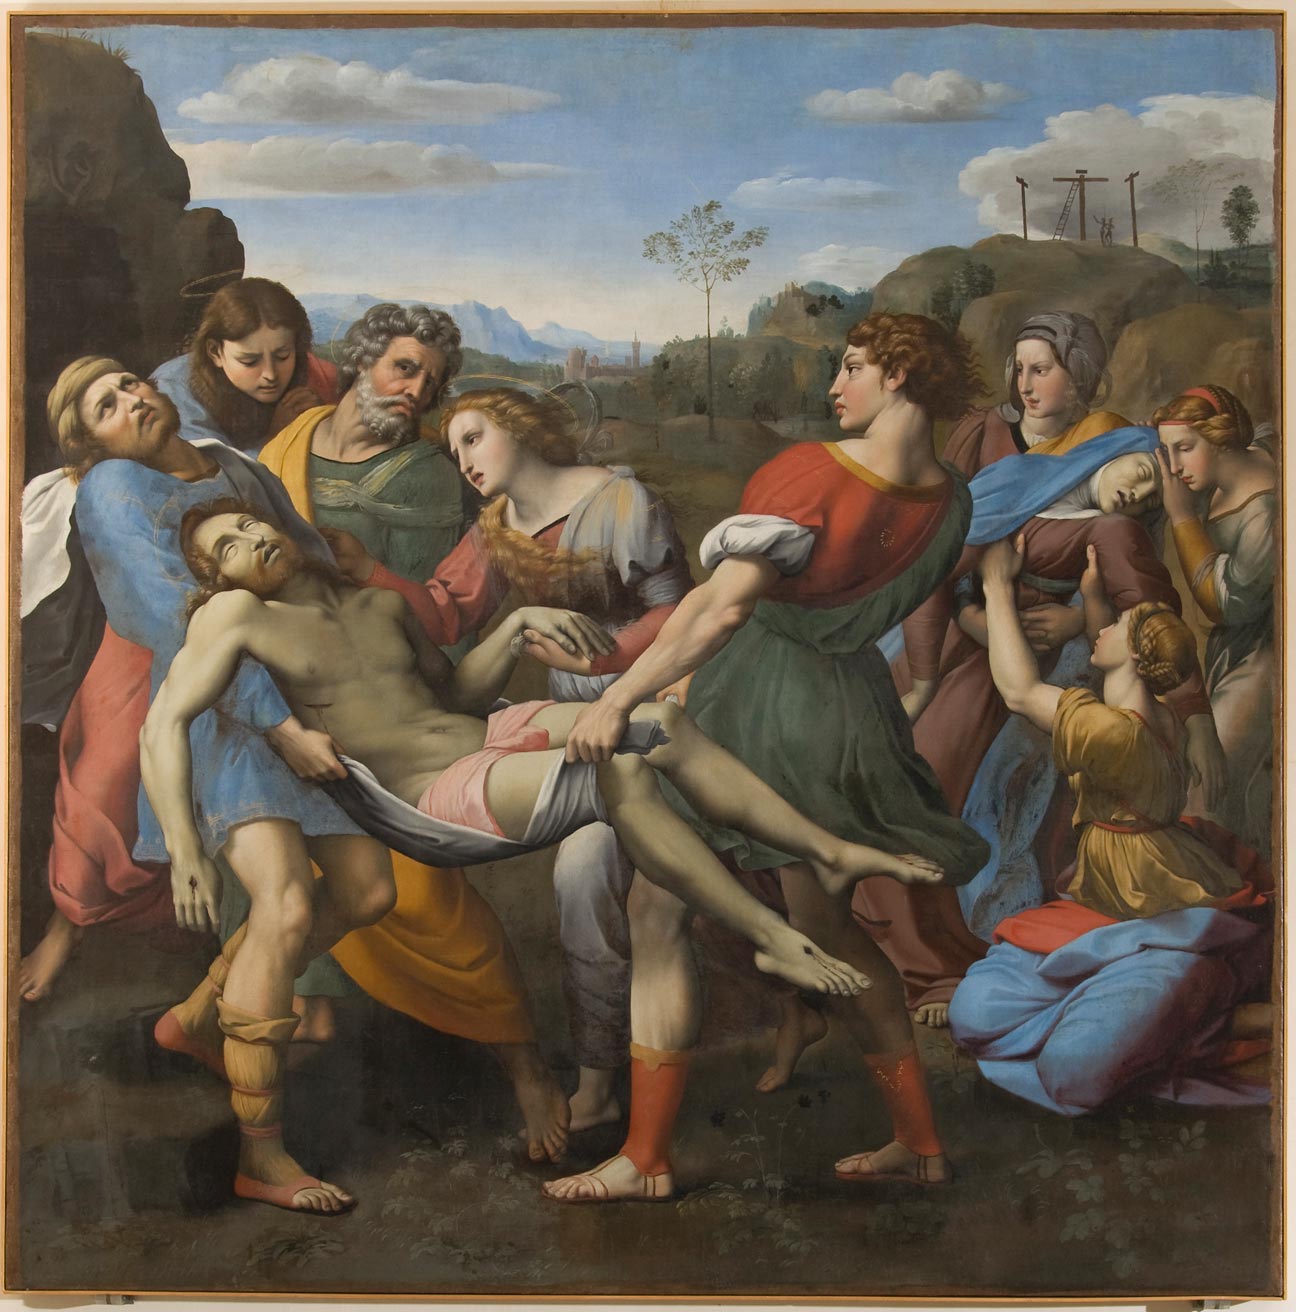 Cavalier d'Arpino, Trasporto di Cristo al sepolcro (1608; olio su tela, 176 x 175 cm; Perugia, Galleria Nazionale dell'Umbria)
